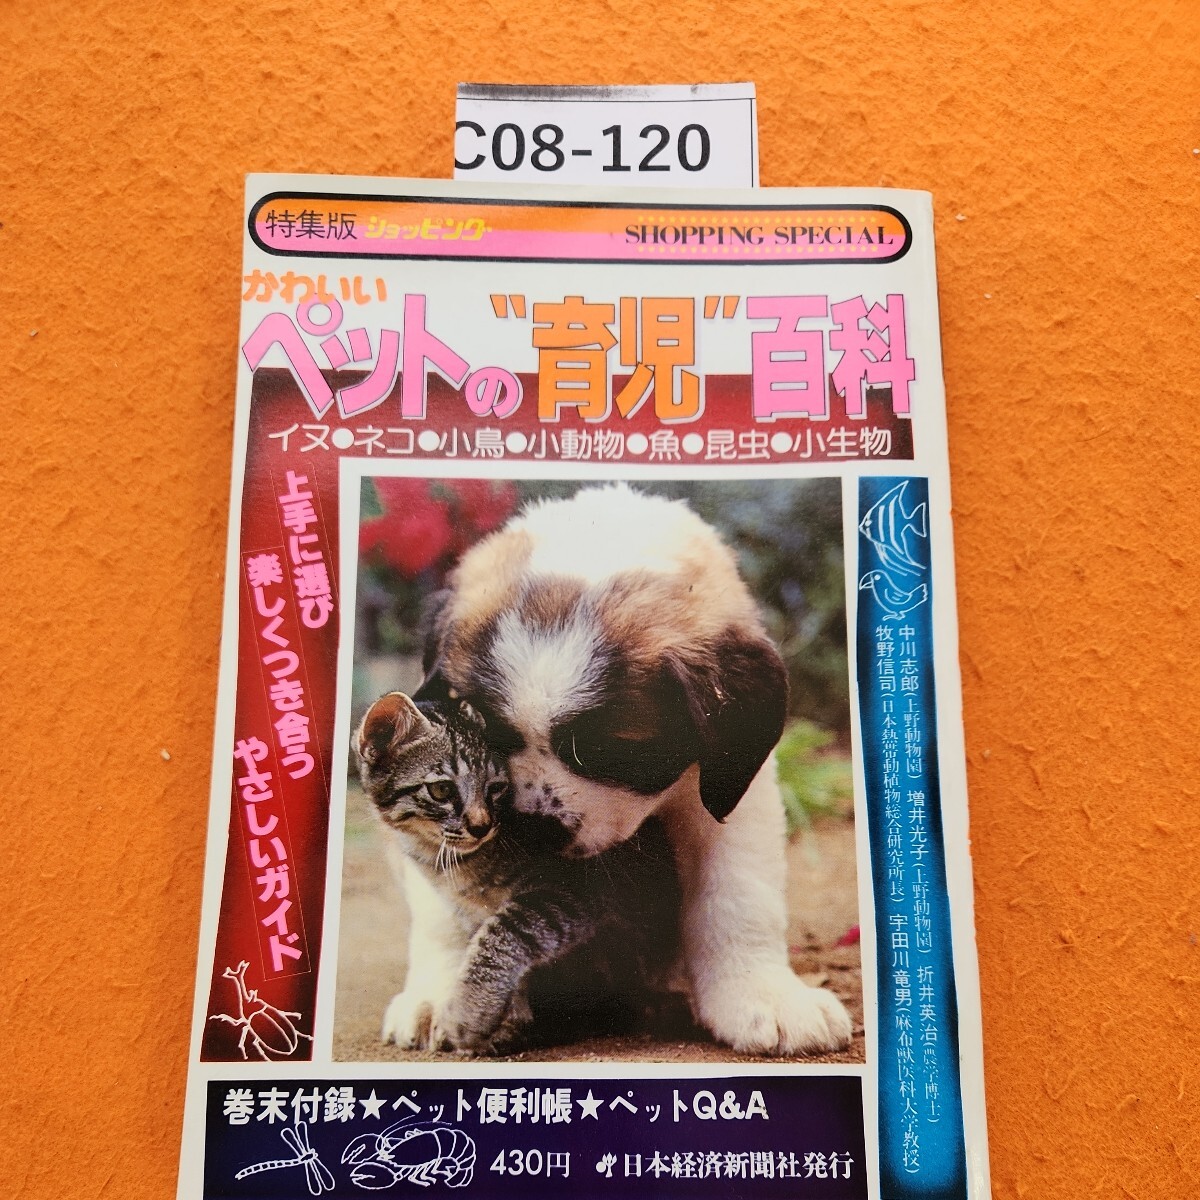 C08-120 SHOPPING SPECLALかわいいペットの育児百科日本経済新聞社発行_画像1